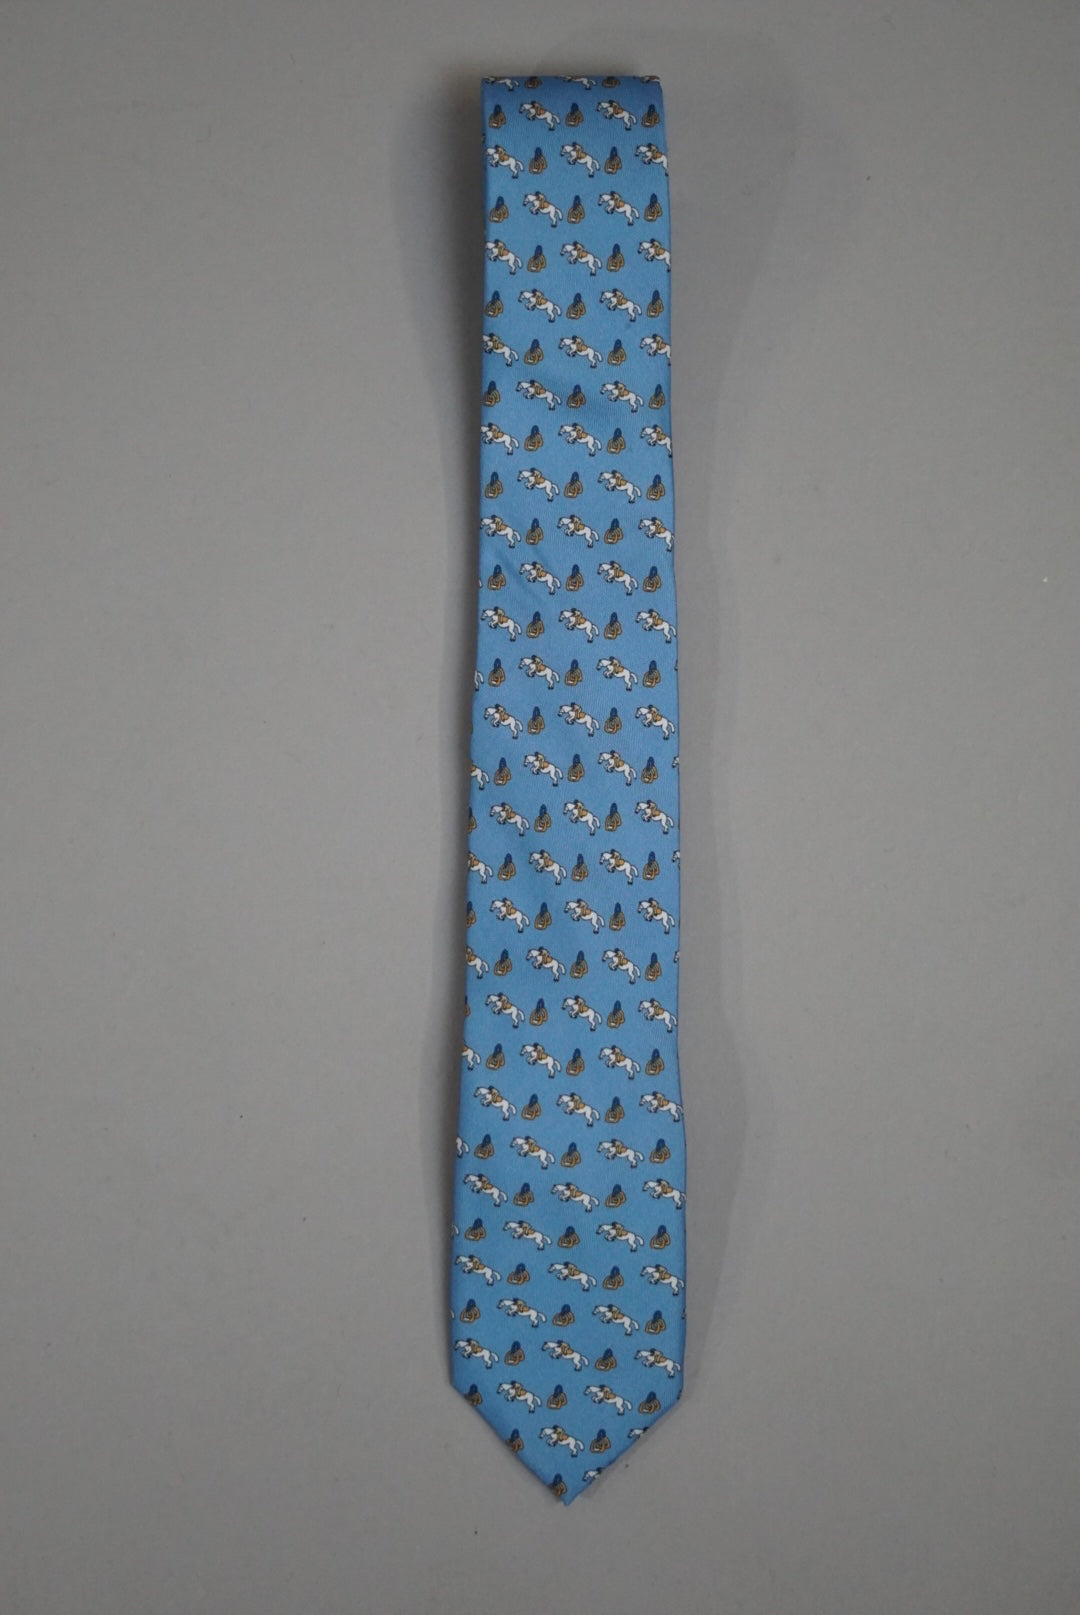 An Ivy Blue Horse Pattern Silk Tie